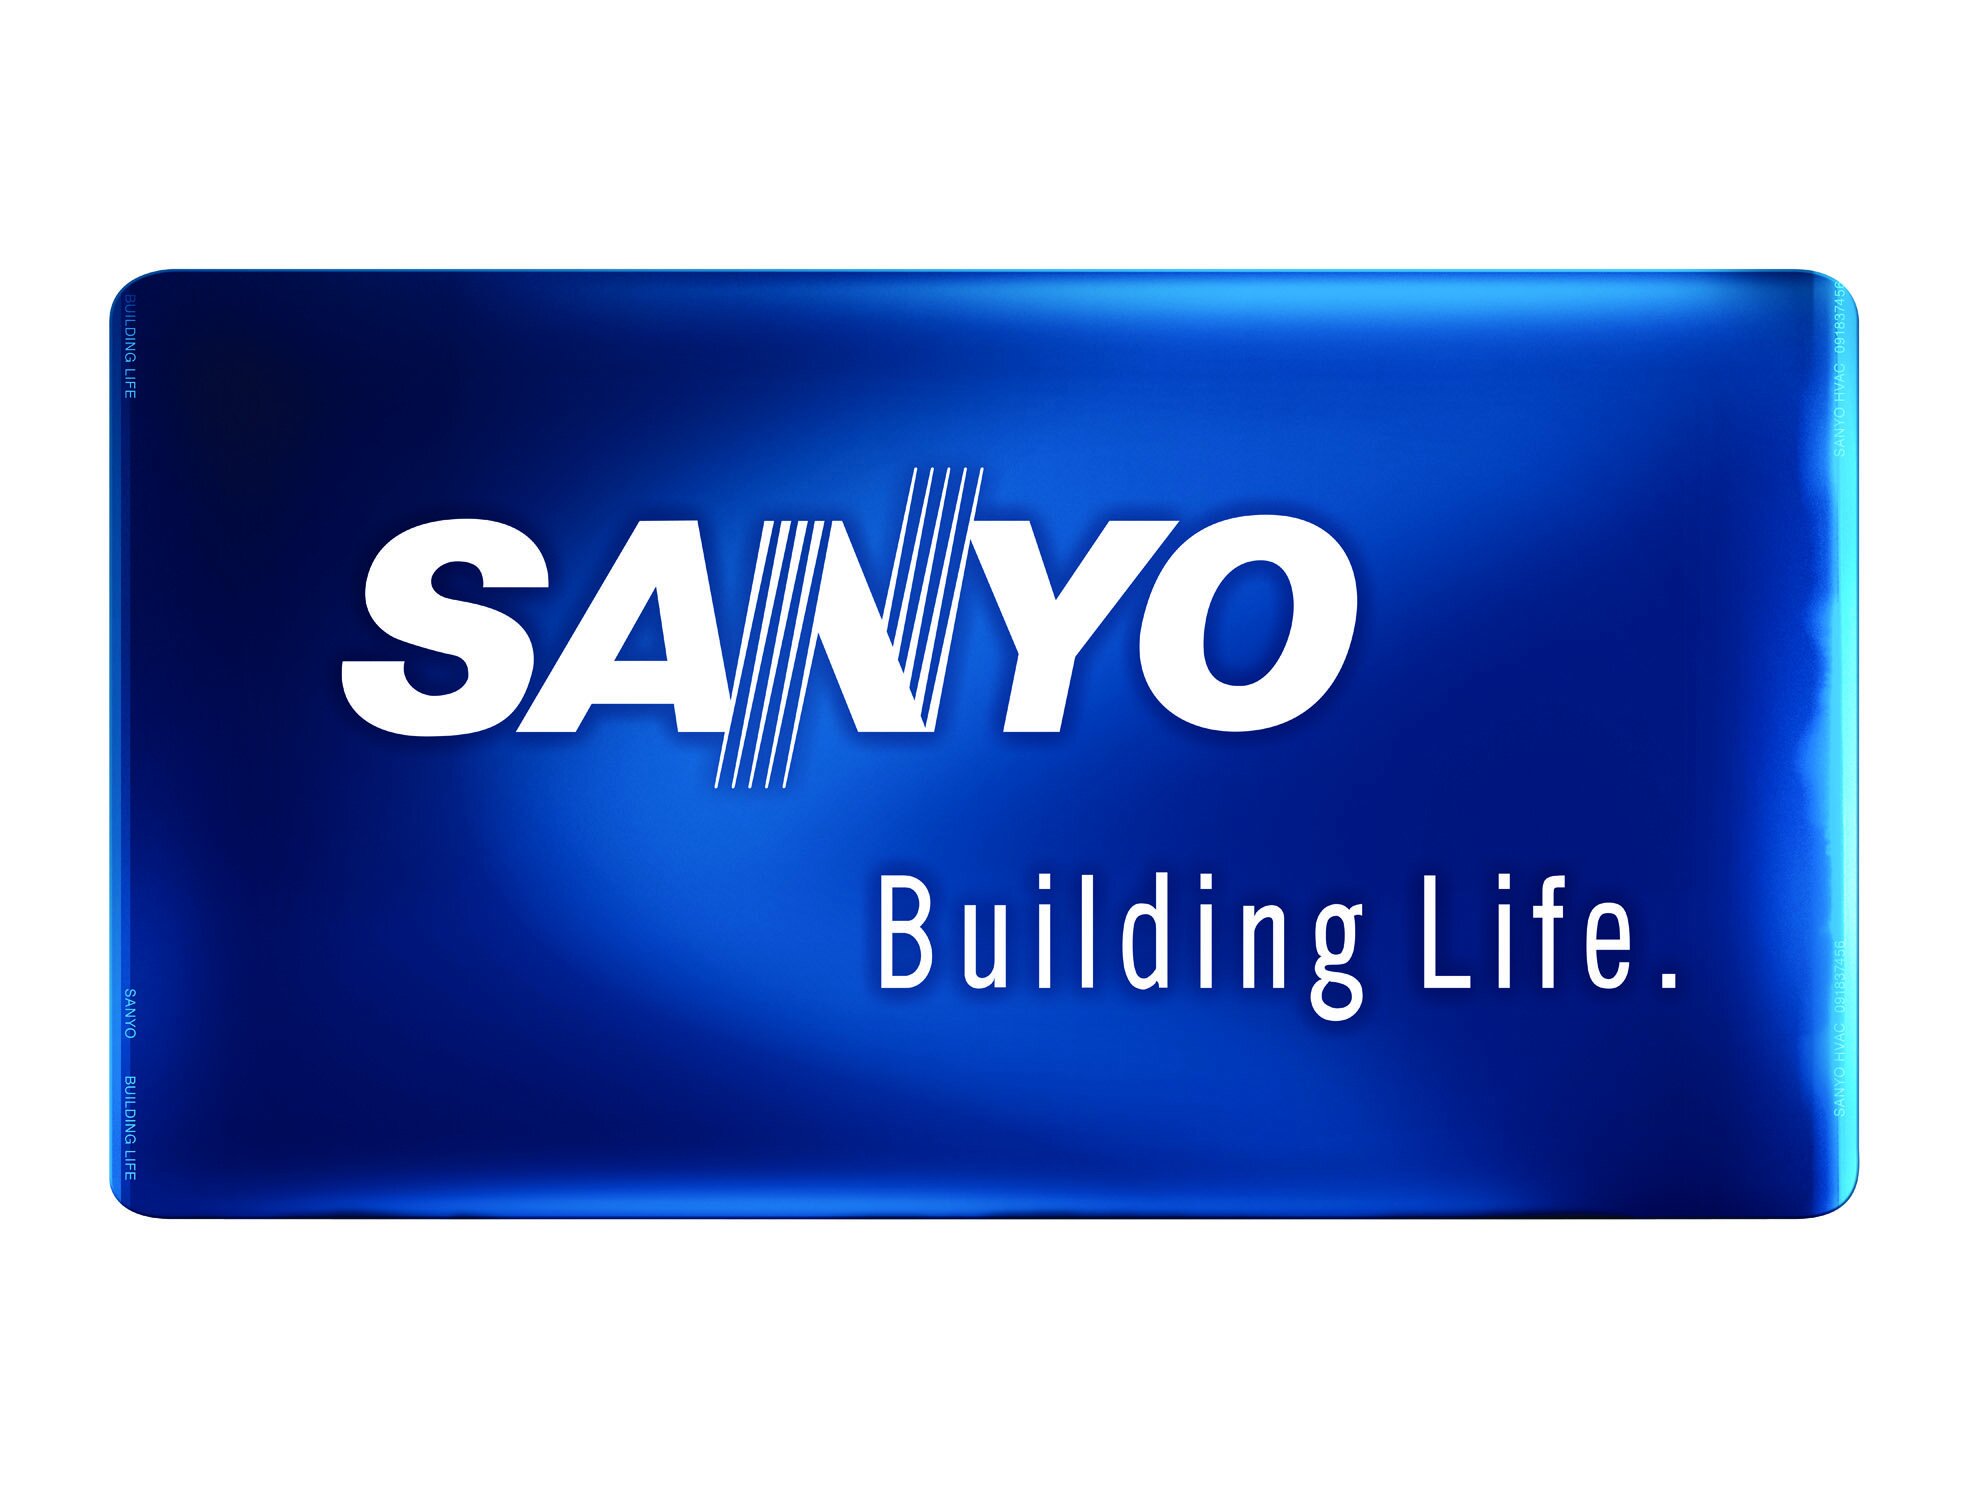 SANYO-HVAC logo2send.jpg